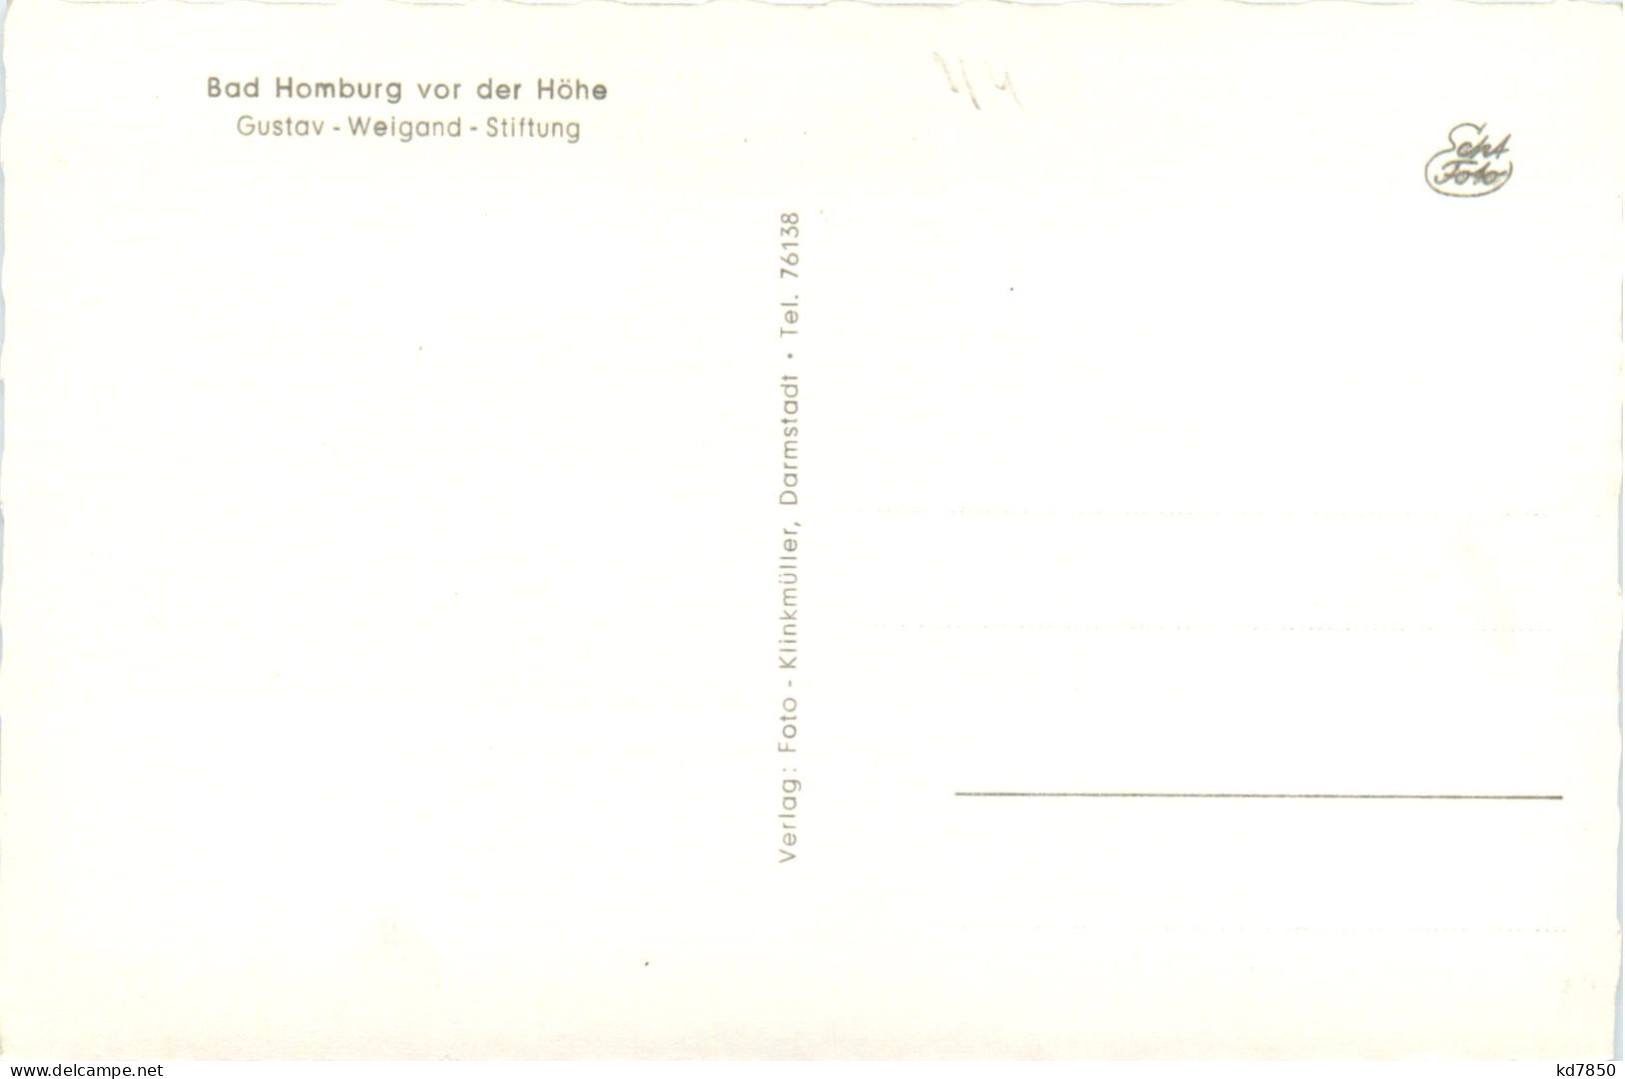 Bad Homburg Vor Der Höhe - Gustav Weigand Stiftung - Bad Homburg